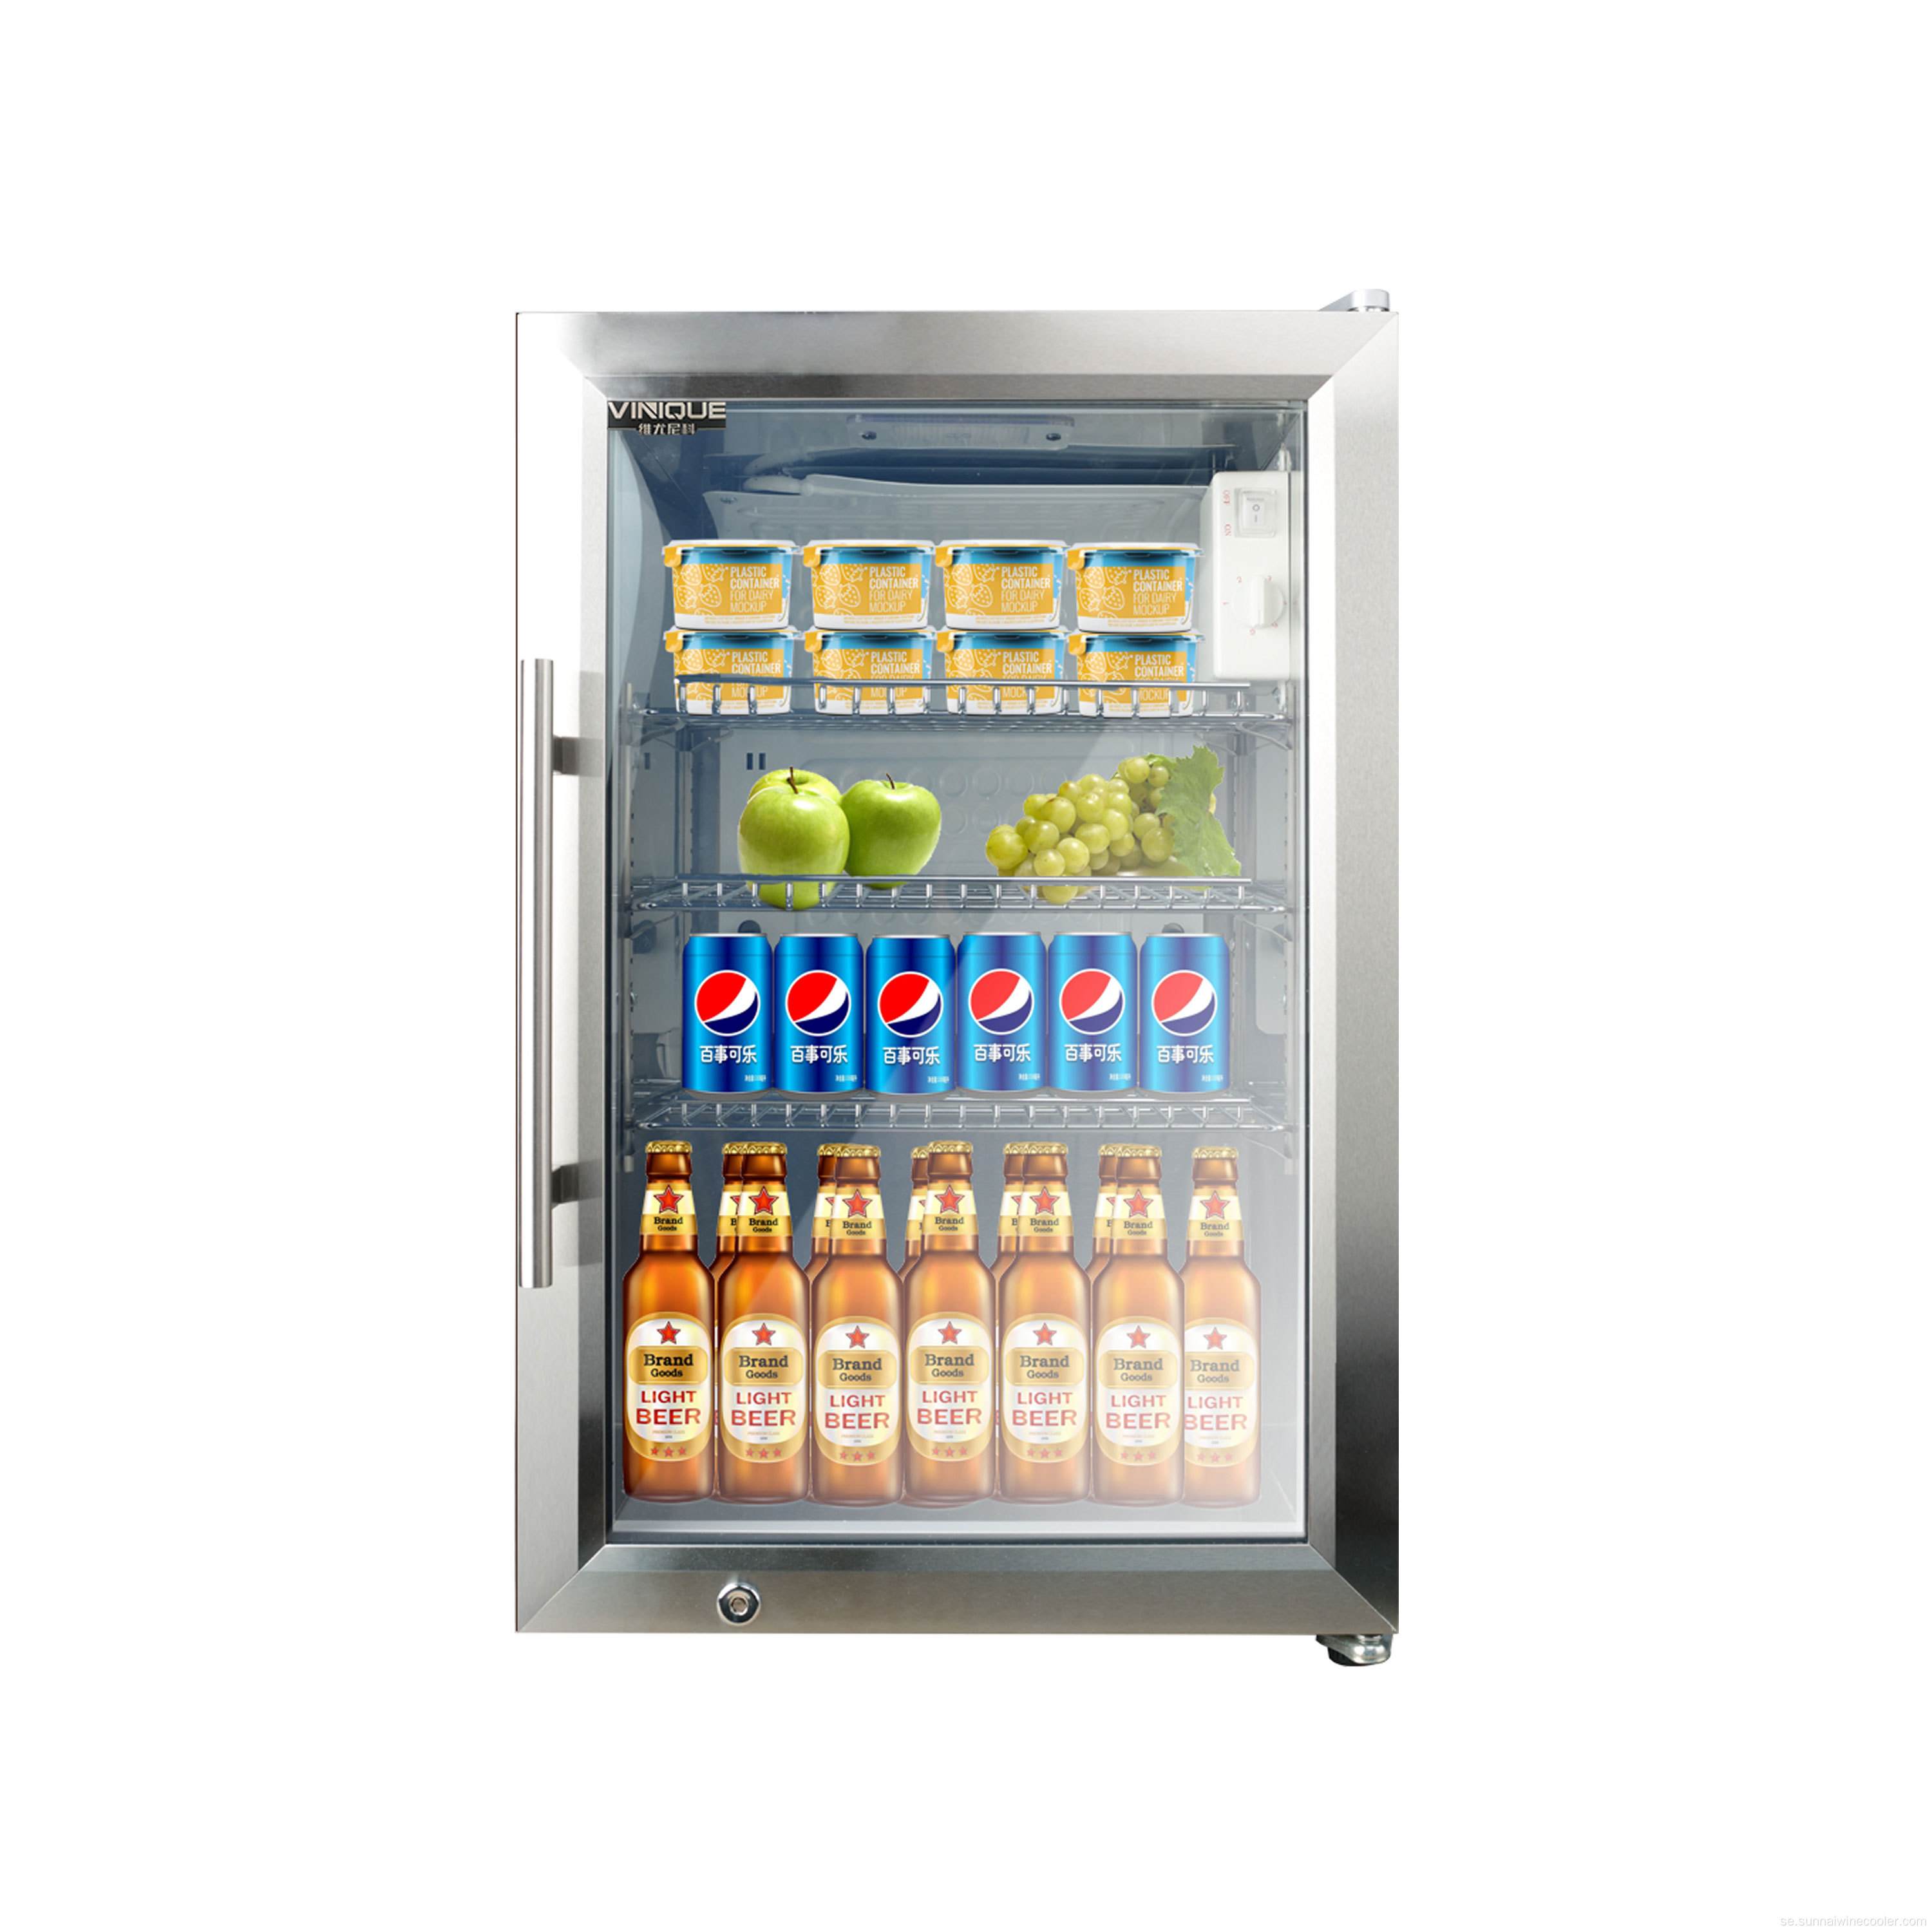 Lågbruskompakt kylskåp för hotellhushåll